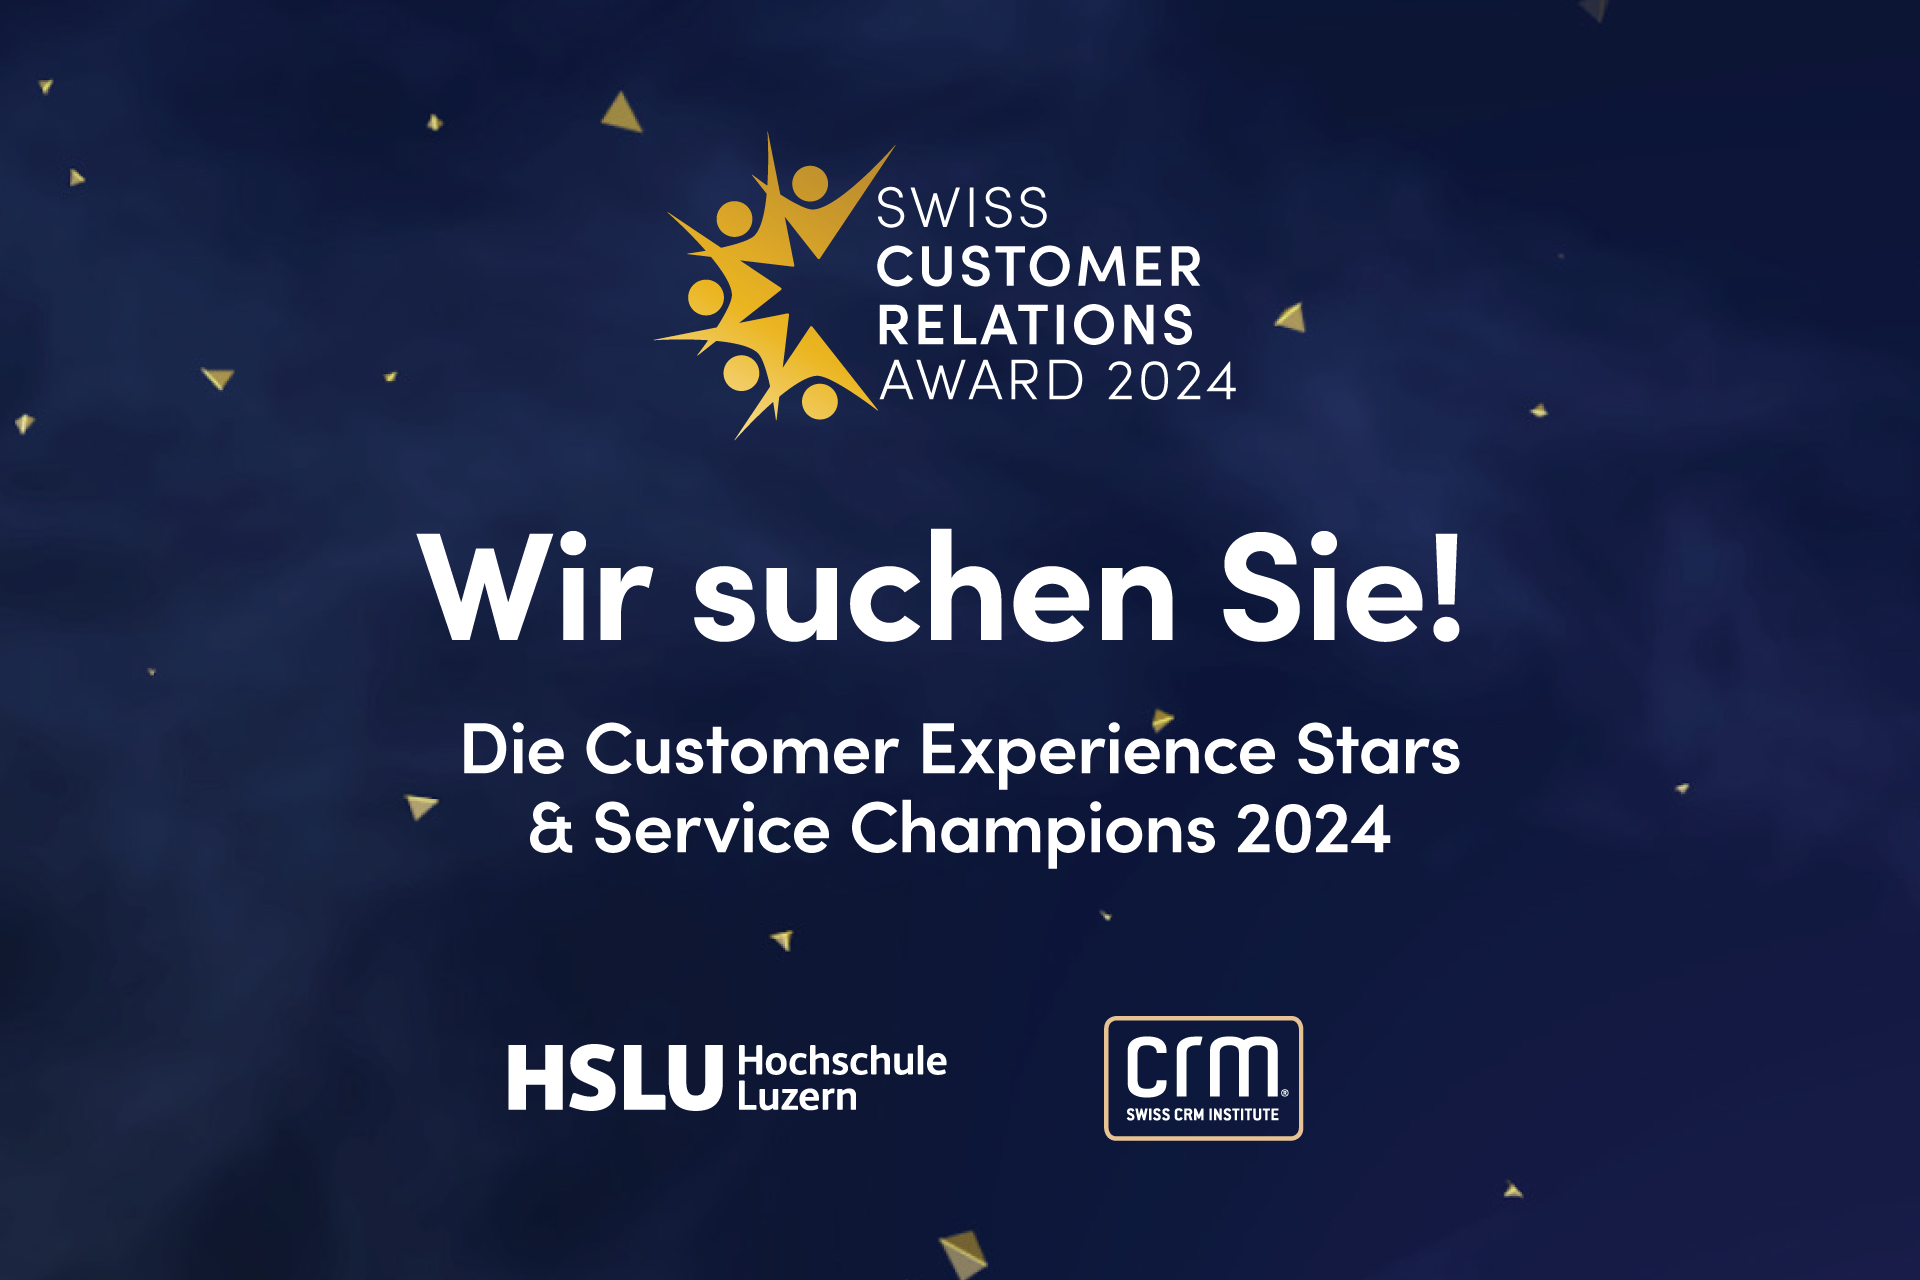 Swiss Customer Relations Award 2024: Neue Projekte, neue Chancen_cmm360.ch_Bild:www.cmm360.ch